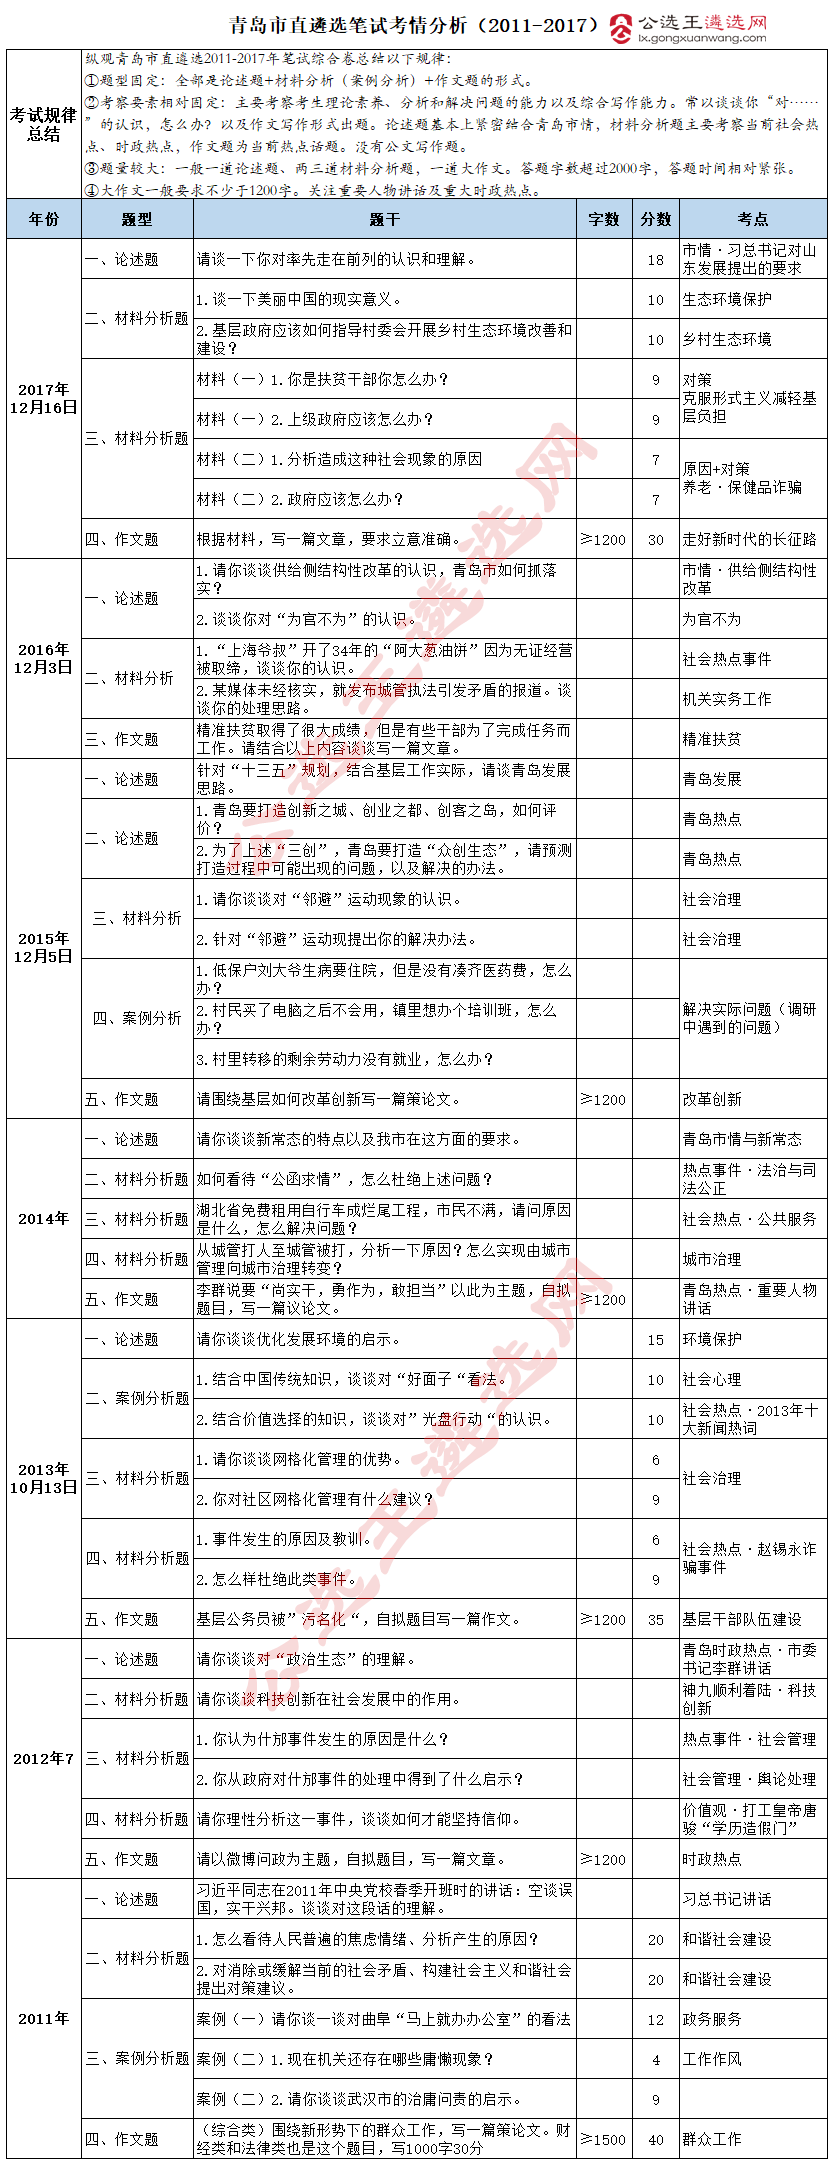 青岛市直遴选笔试考情分析（2011-2017）_副本.png